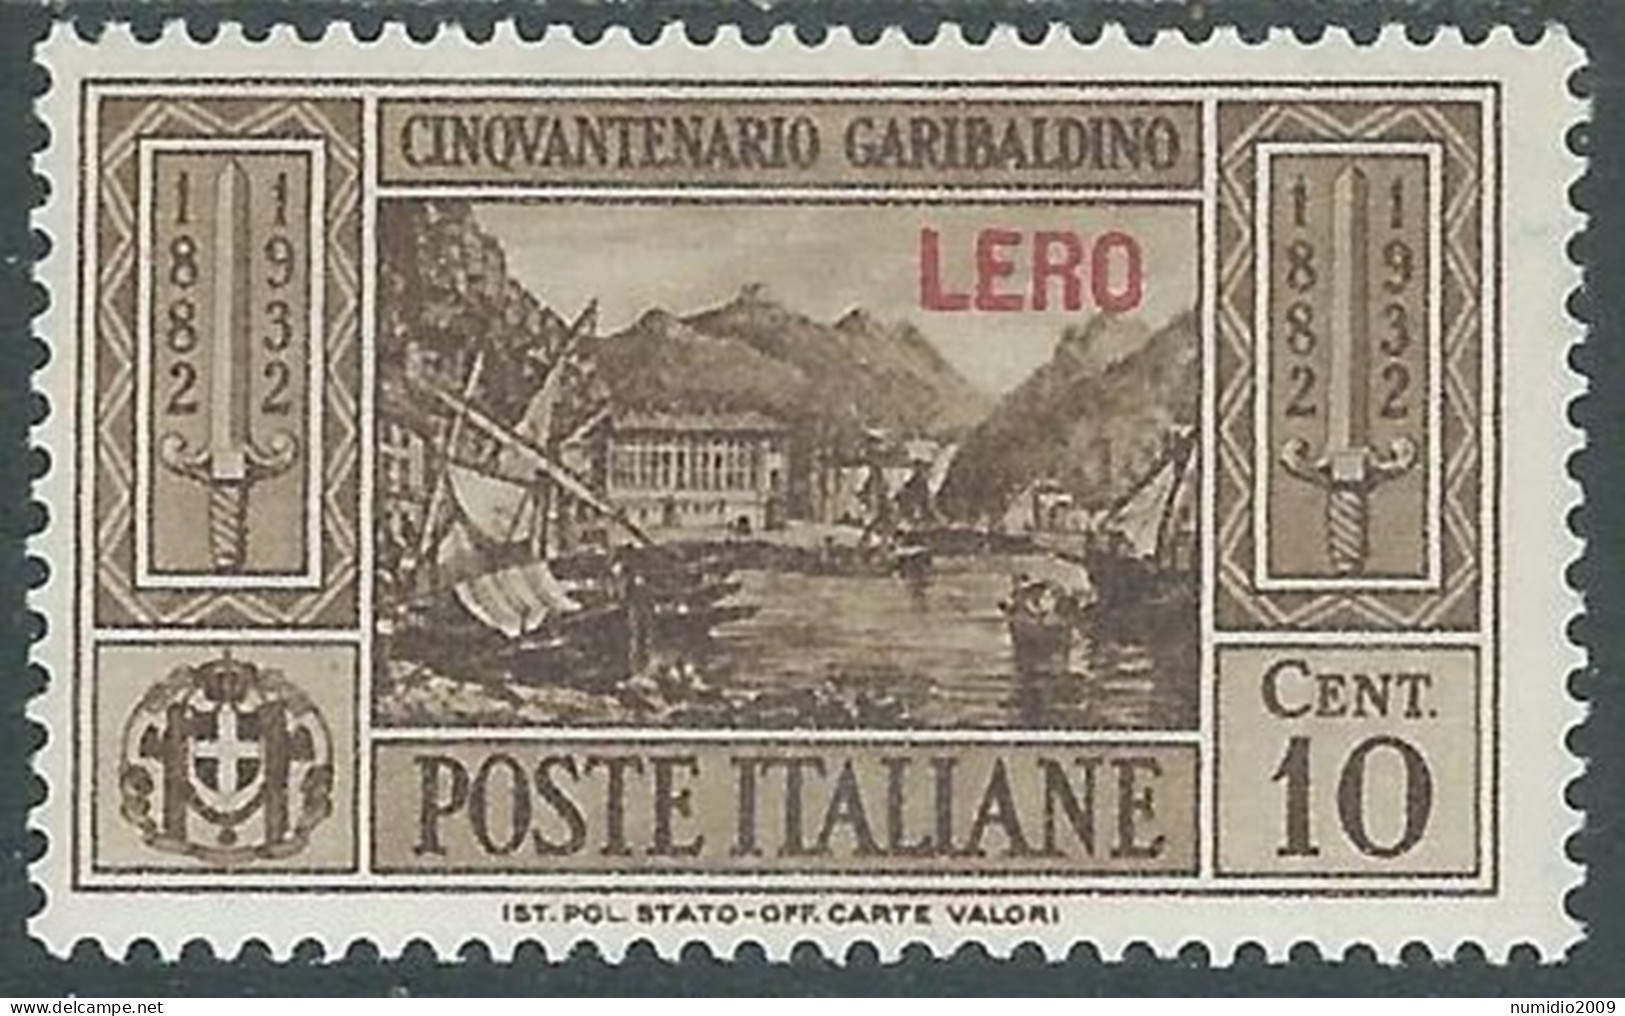 1932 EGEO LERO GARIBALDI 10 CENT MH * - I45-9 - Aegean (Lero)